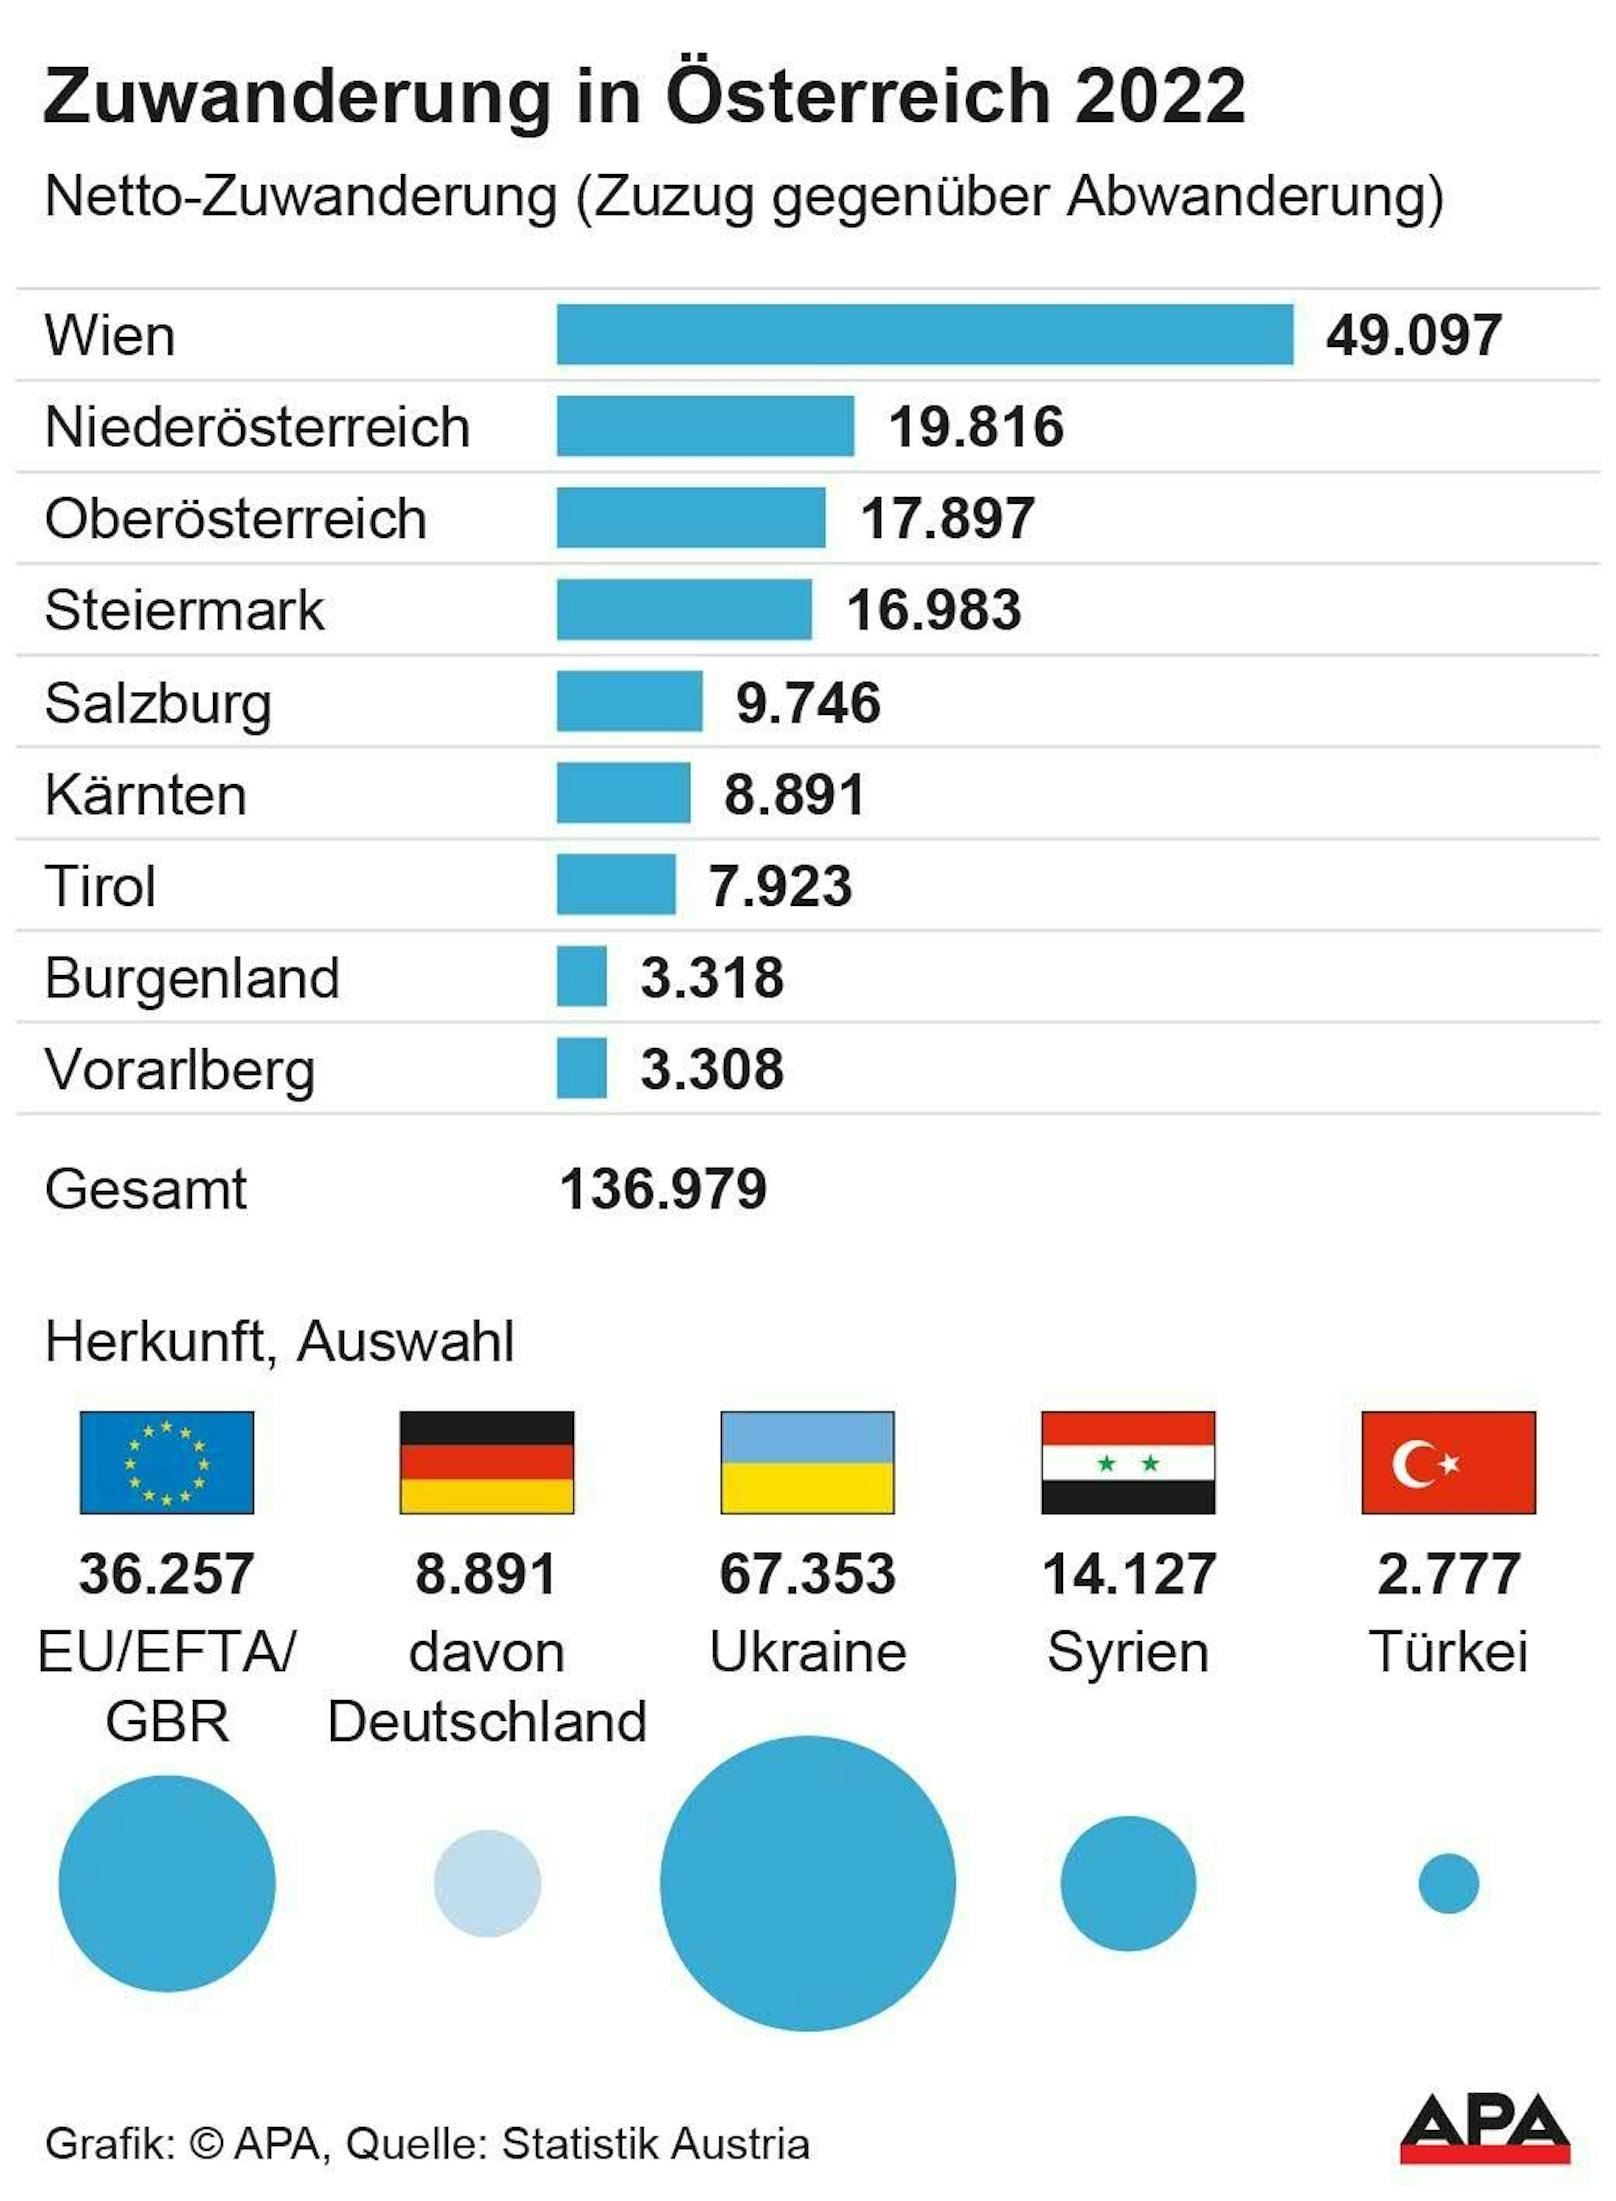 Die Zuwanderung nach Österreich, aufgeschlüsselt nach Bundesland und Herkunftsland (Stand 1.6.2022).